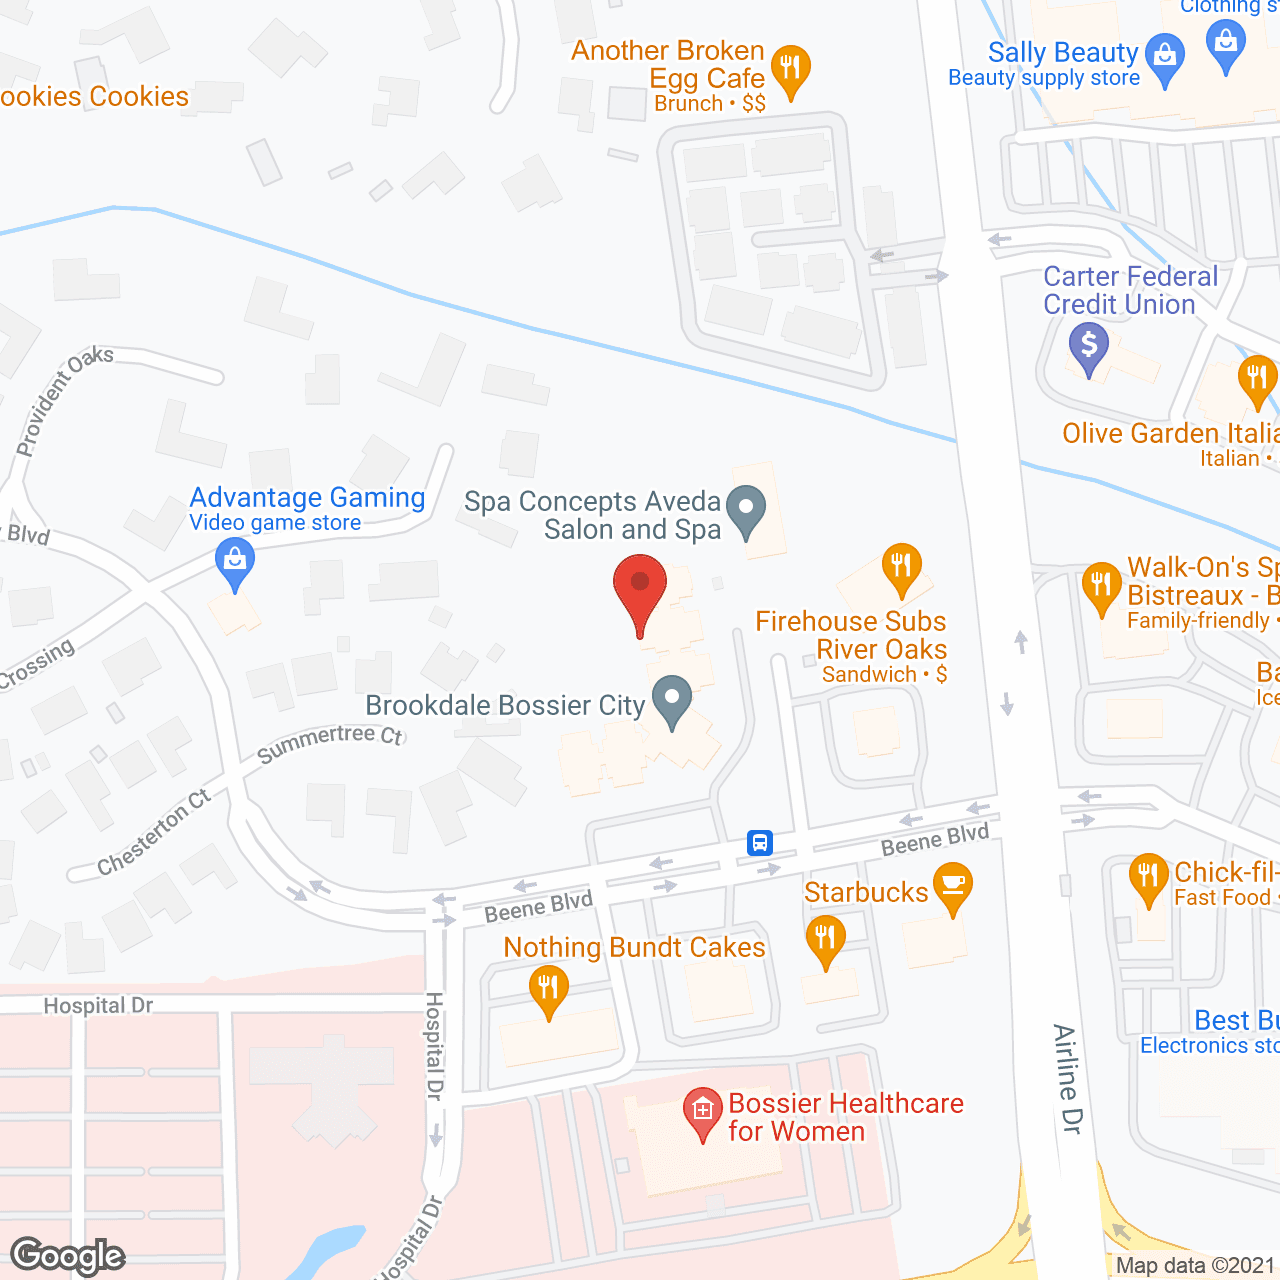 Brookdale Bossier City in google map